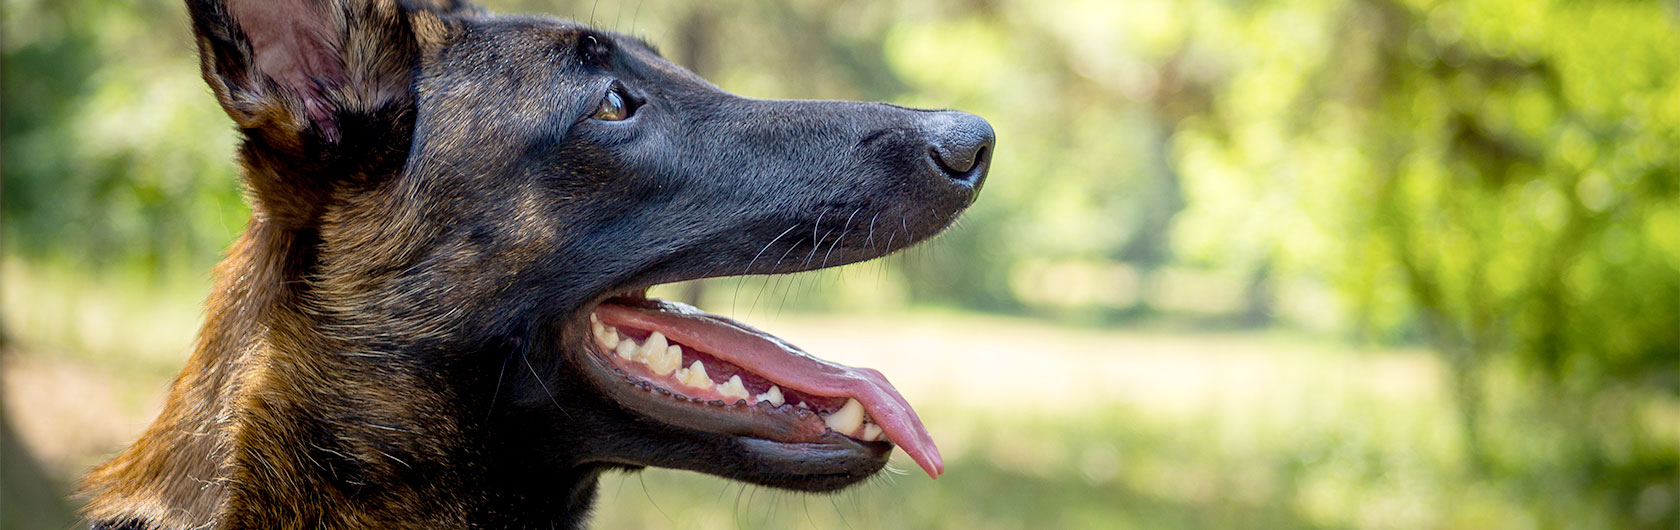 cómo y por qué se desgasta la dentadura de los perros